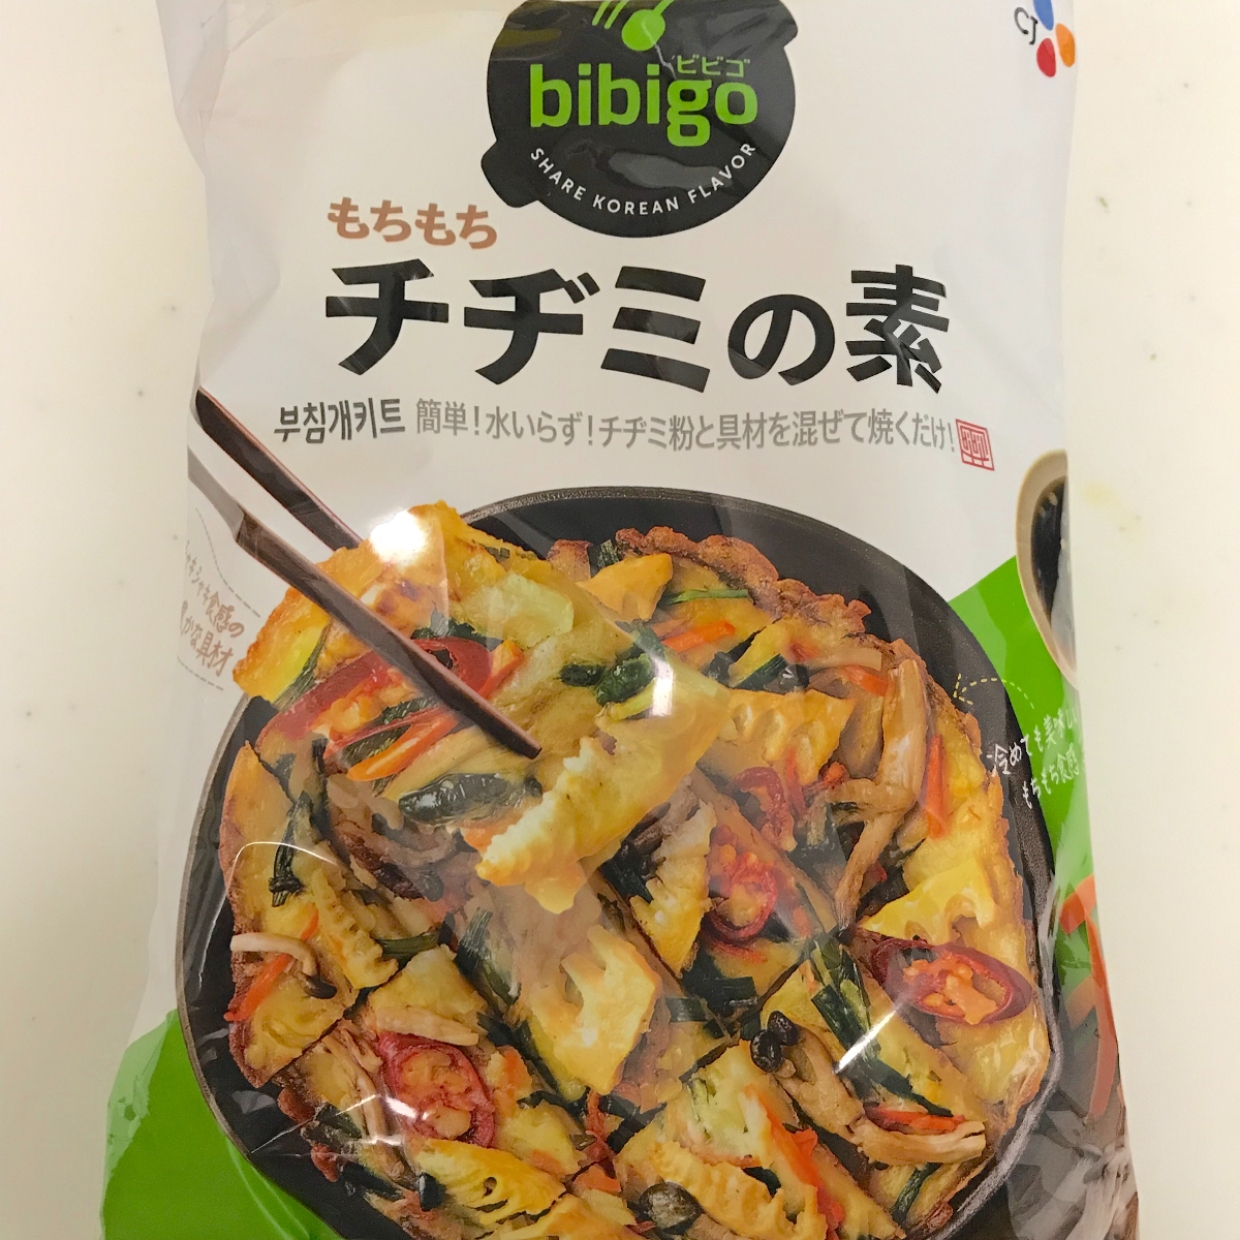  【コストコ】「bibigo チヂミの素」が便利すぎ！ニラを入れて焼くだけで本格チヂミが完成♪ 